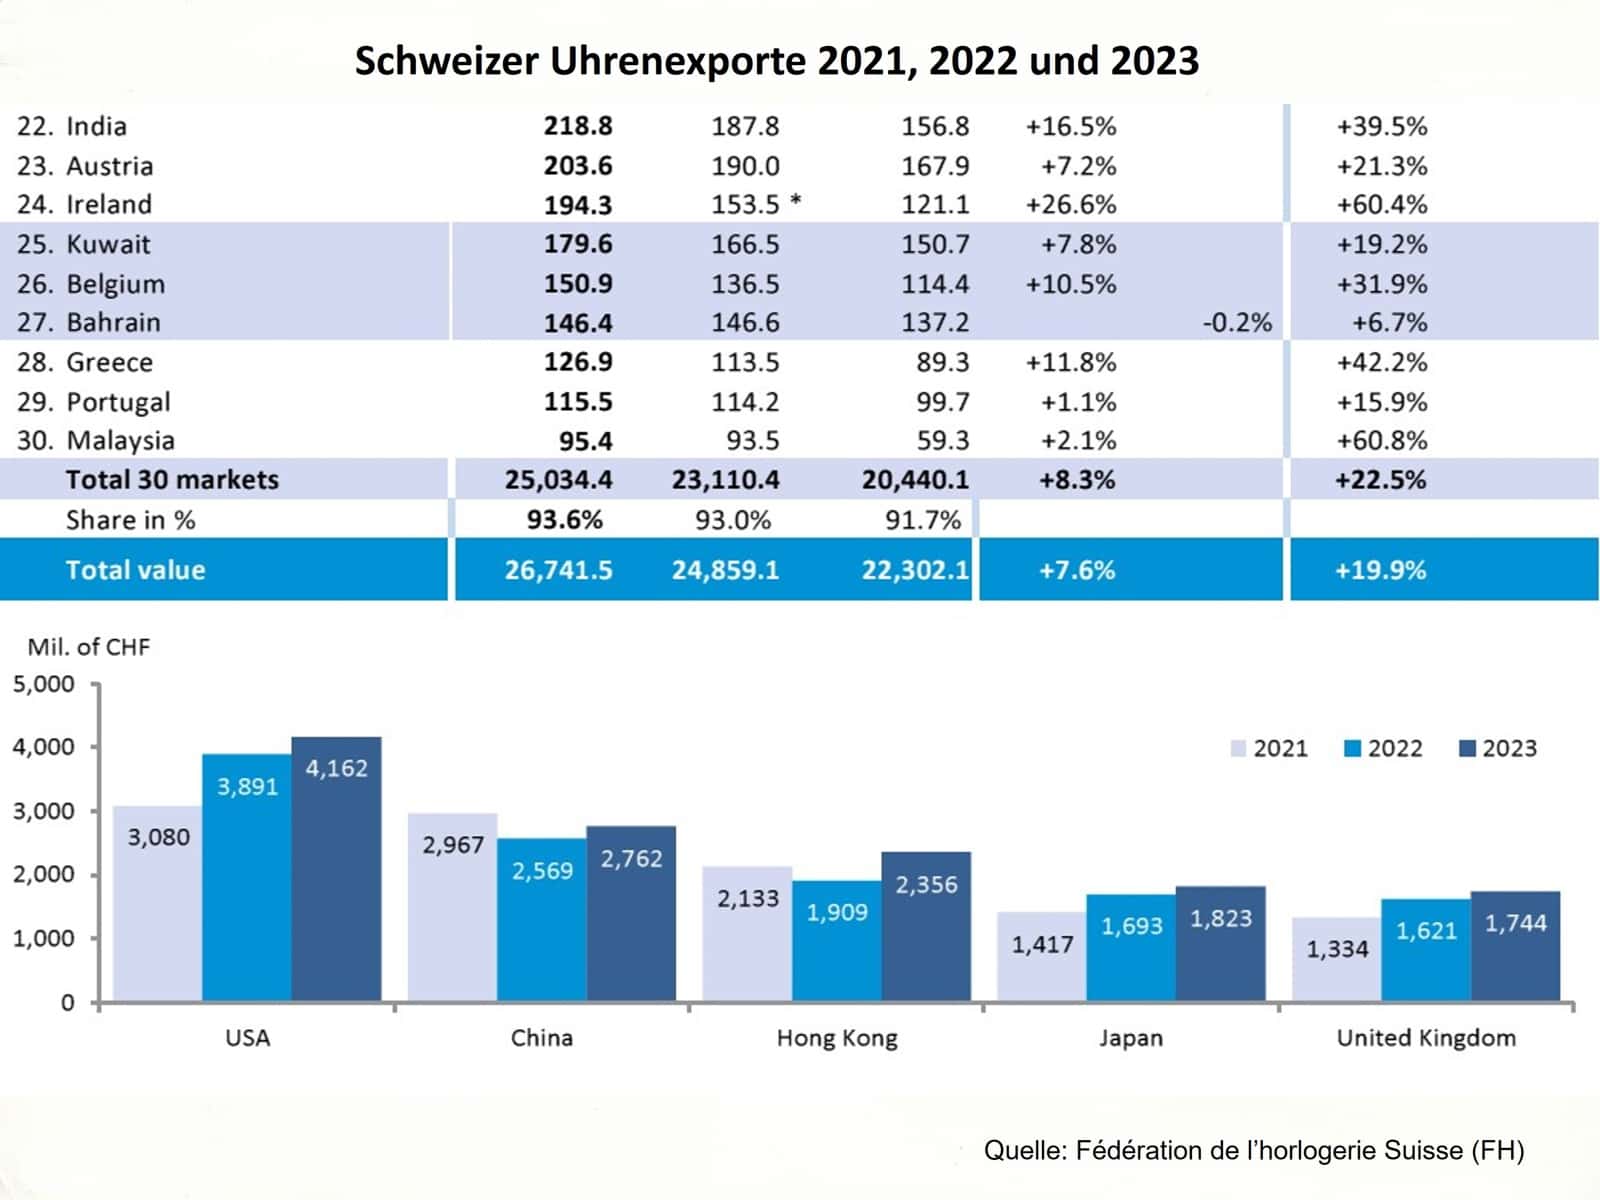 Schweizer Uhrenexporte 2021, 2022 und 2023 nach Ländern